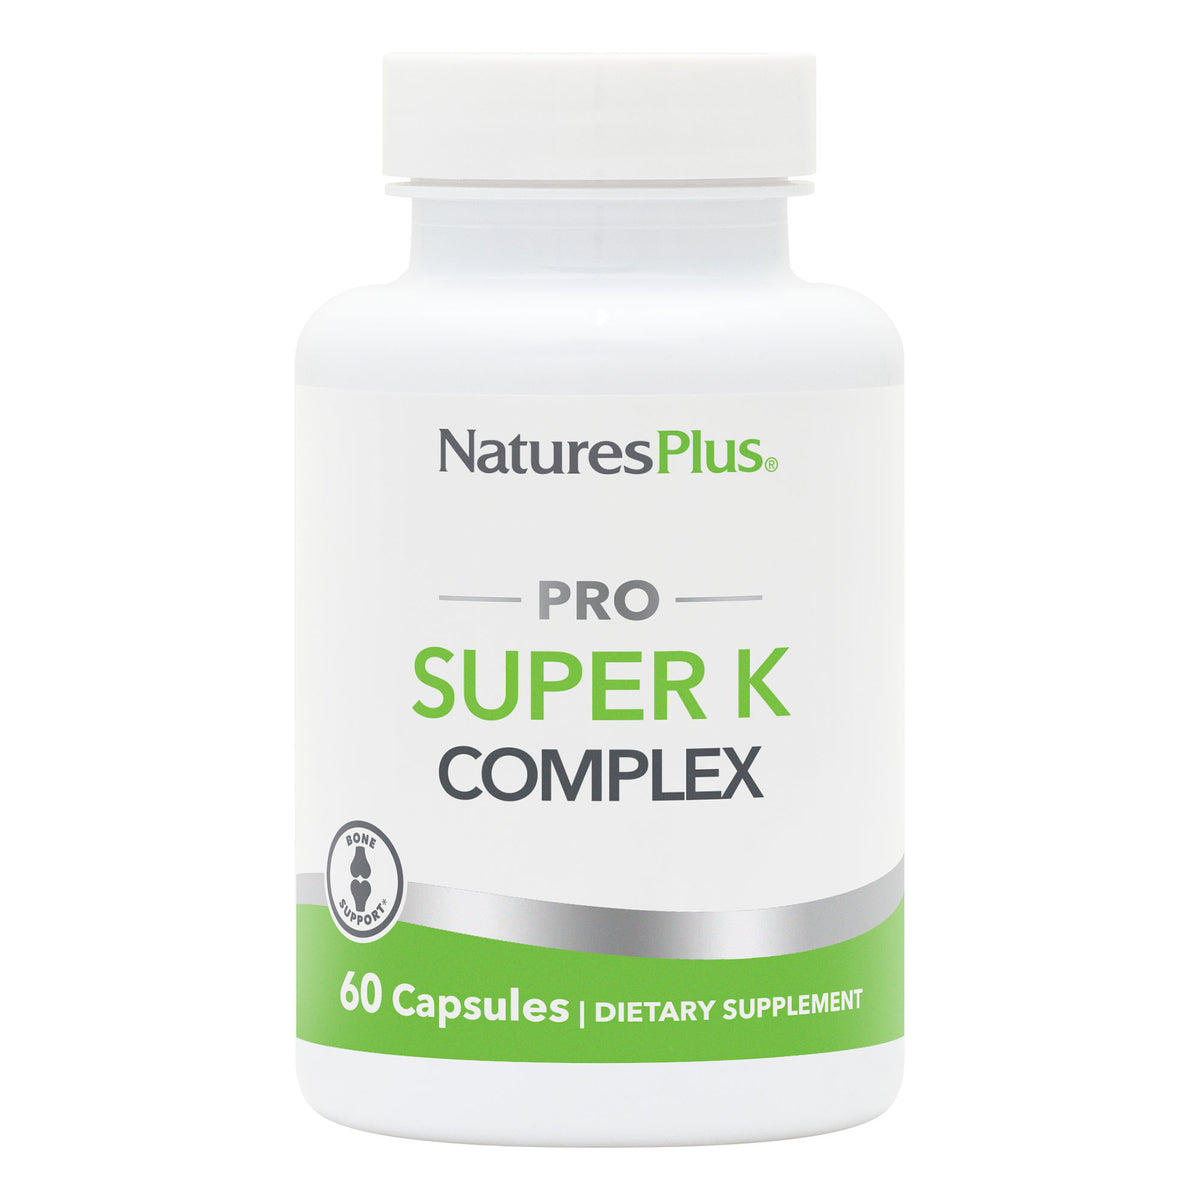 product image of NaturesPlus PRO Super K Complex Capsules containing 60 Count